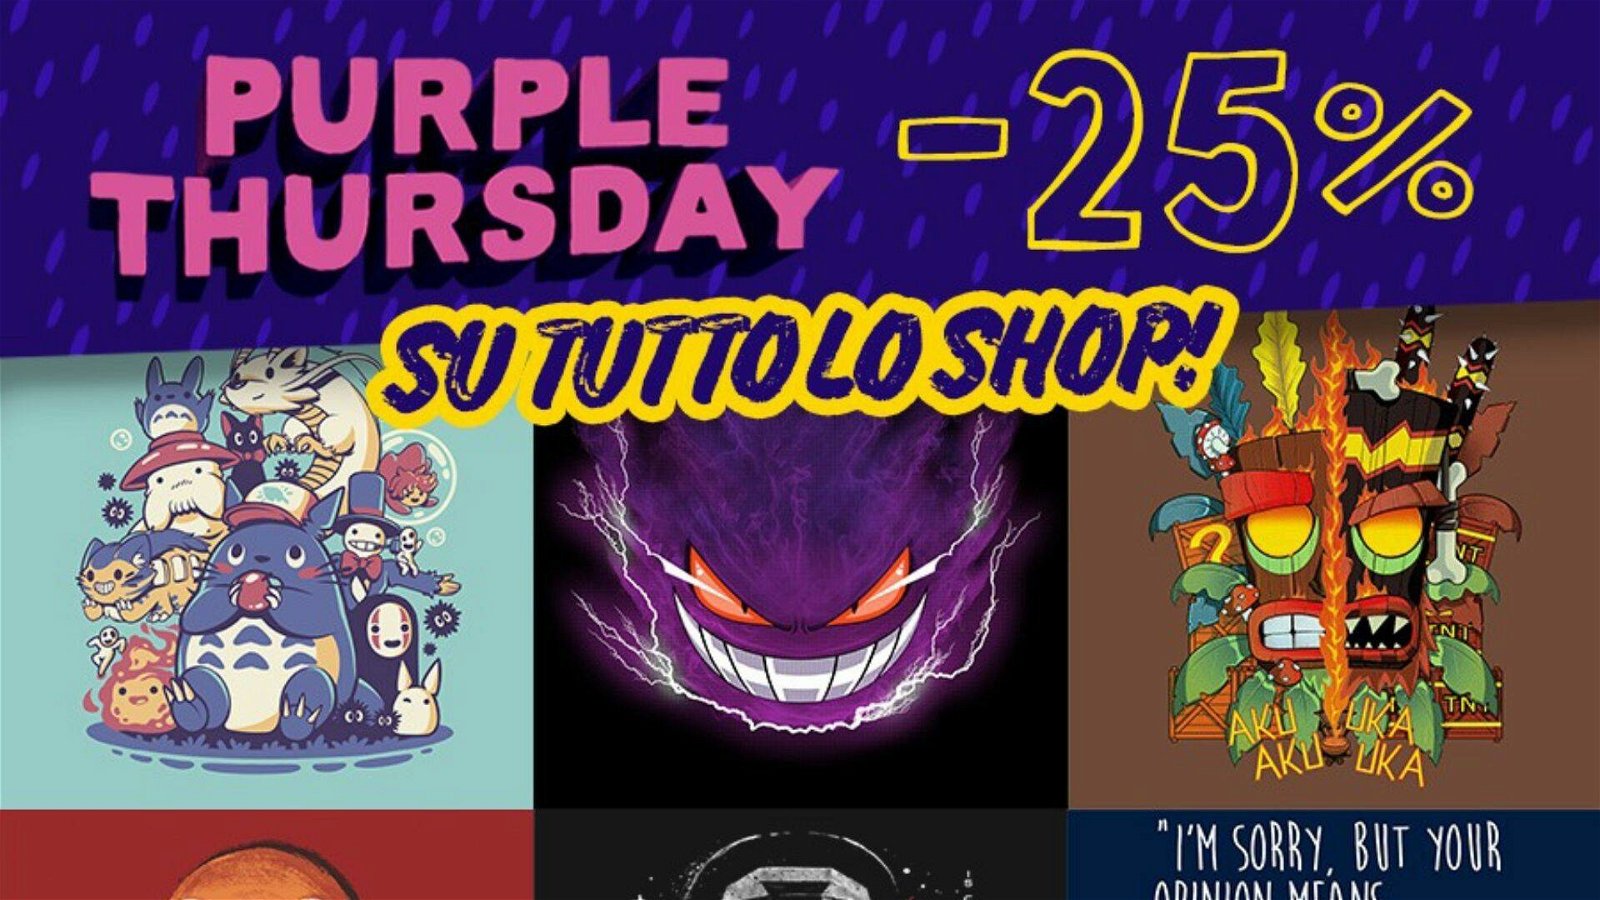 Immagine di Magliette geek al 25% di sconto solo oggi per il TeeTee Purple Thursday